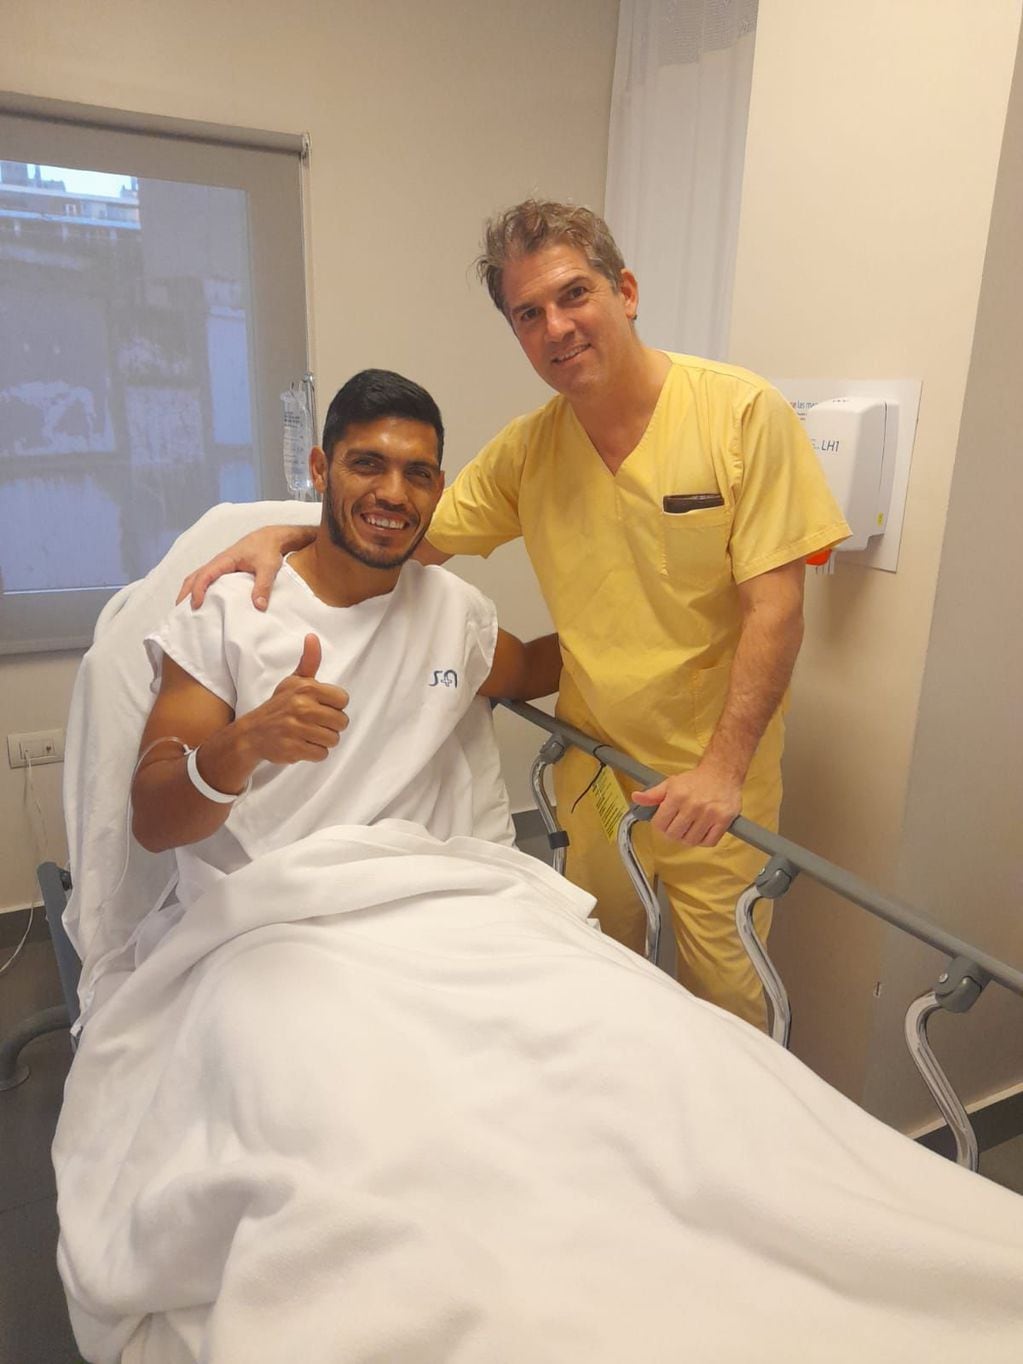 Rafael Delgado, lateral izquierdo de Belgrano, también fue operado de una rotura de meniscos